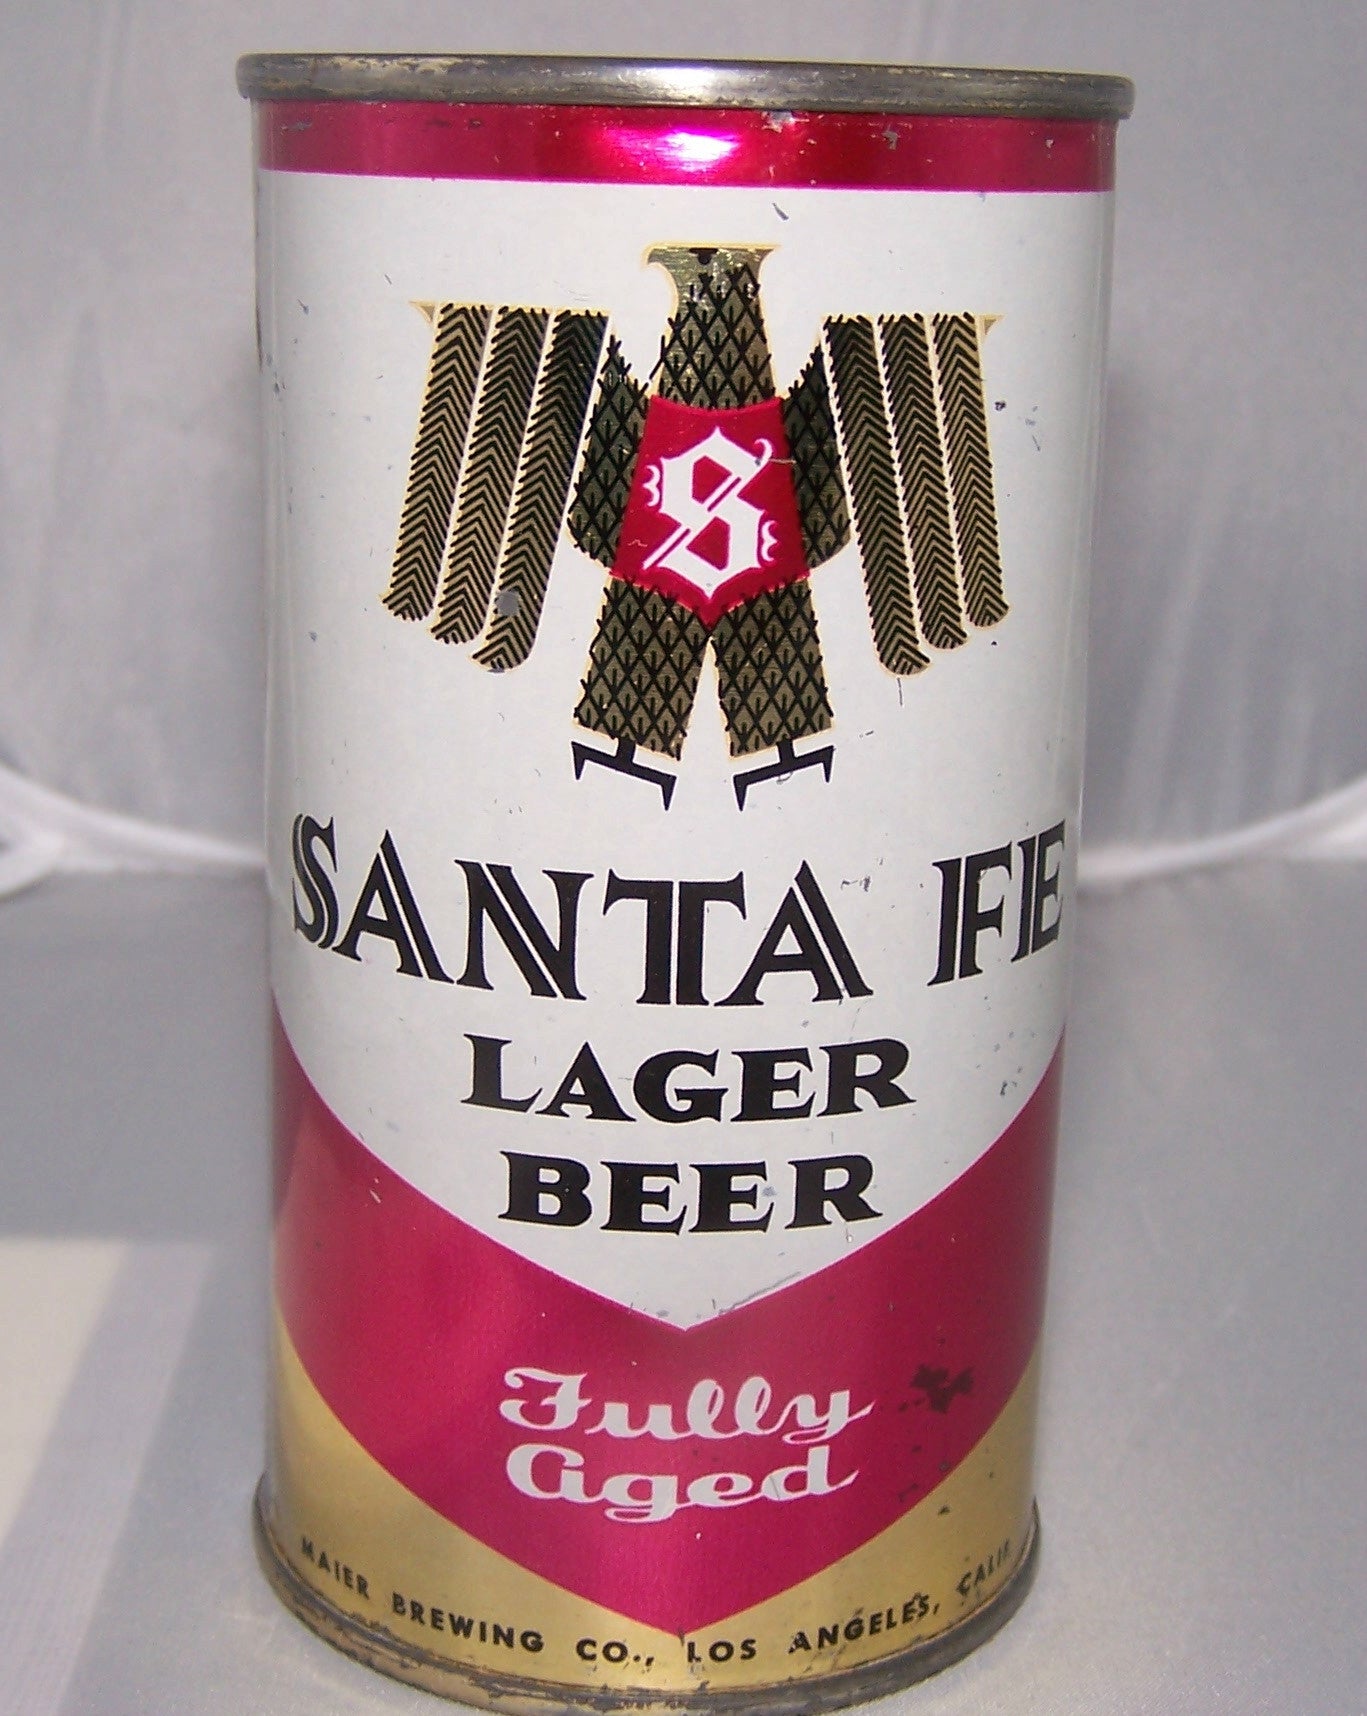 Santa Fe Lager Beer, USBC 127-17, Grade 1/1- Sold 5/3/15